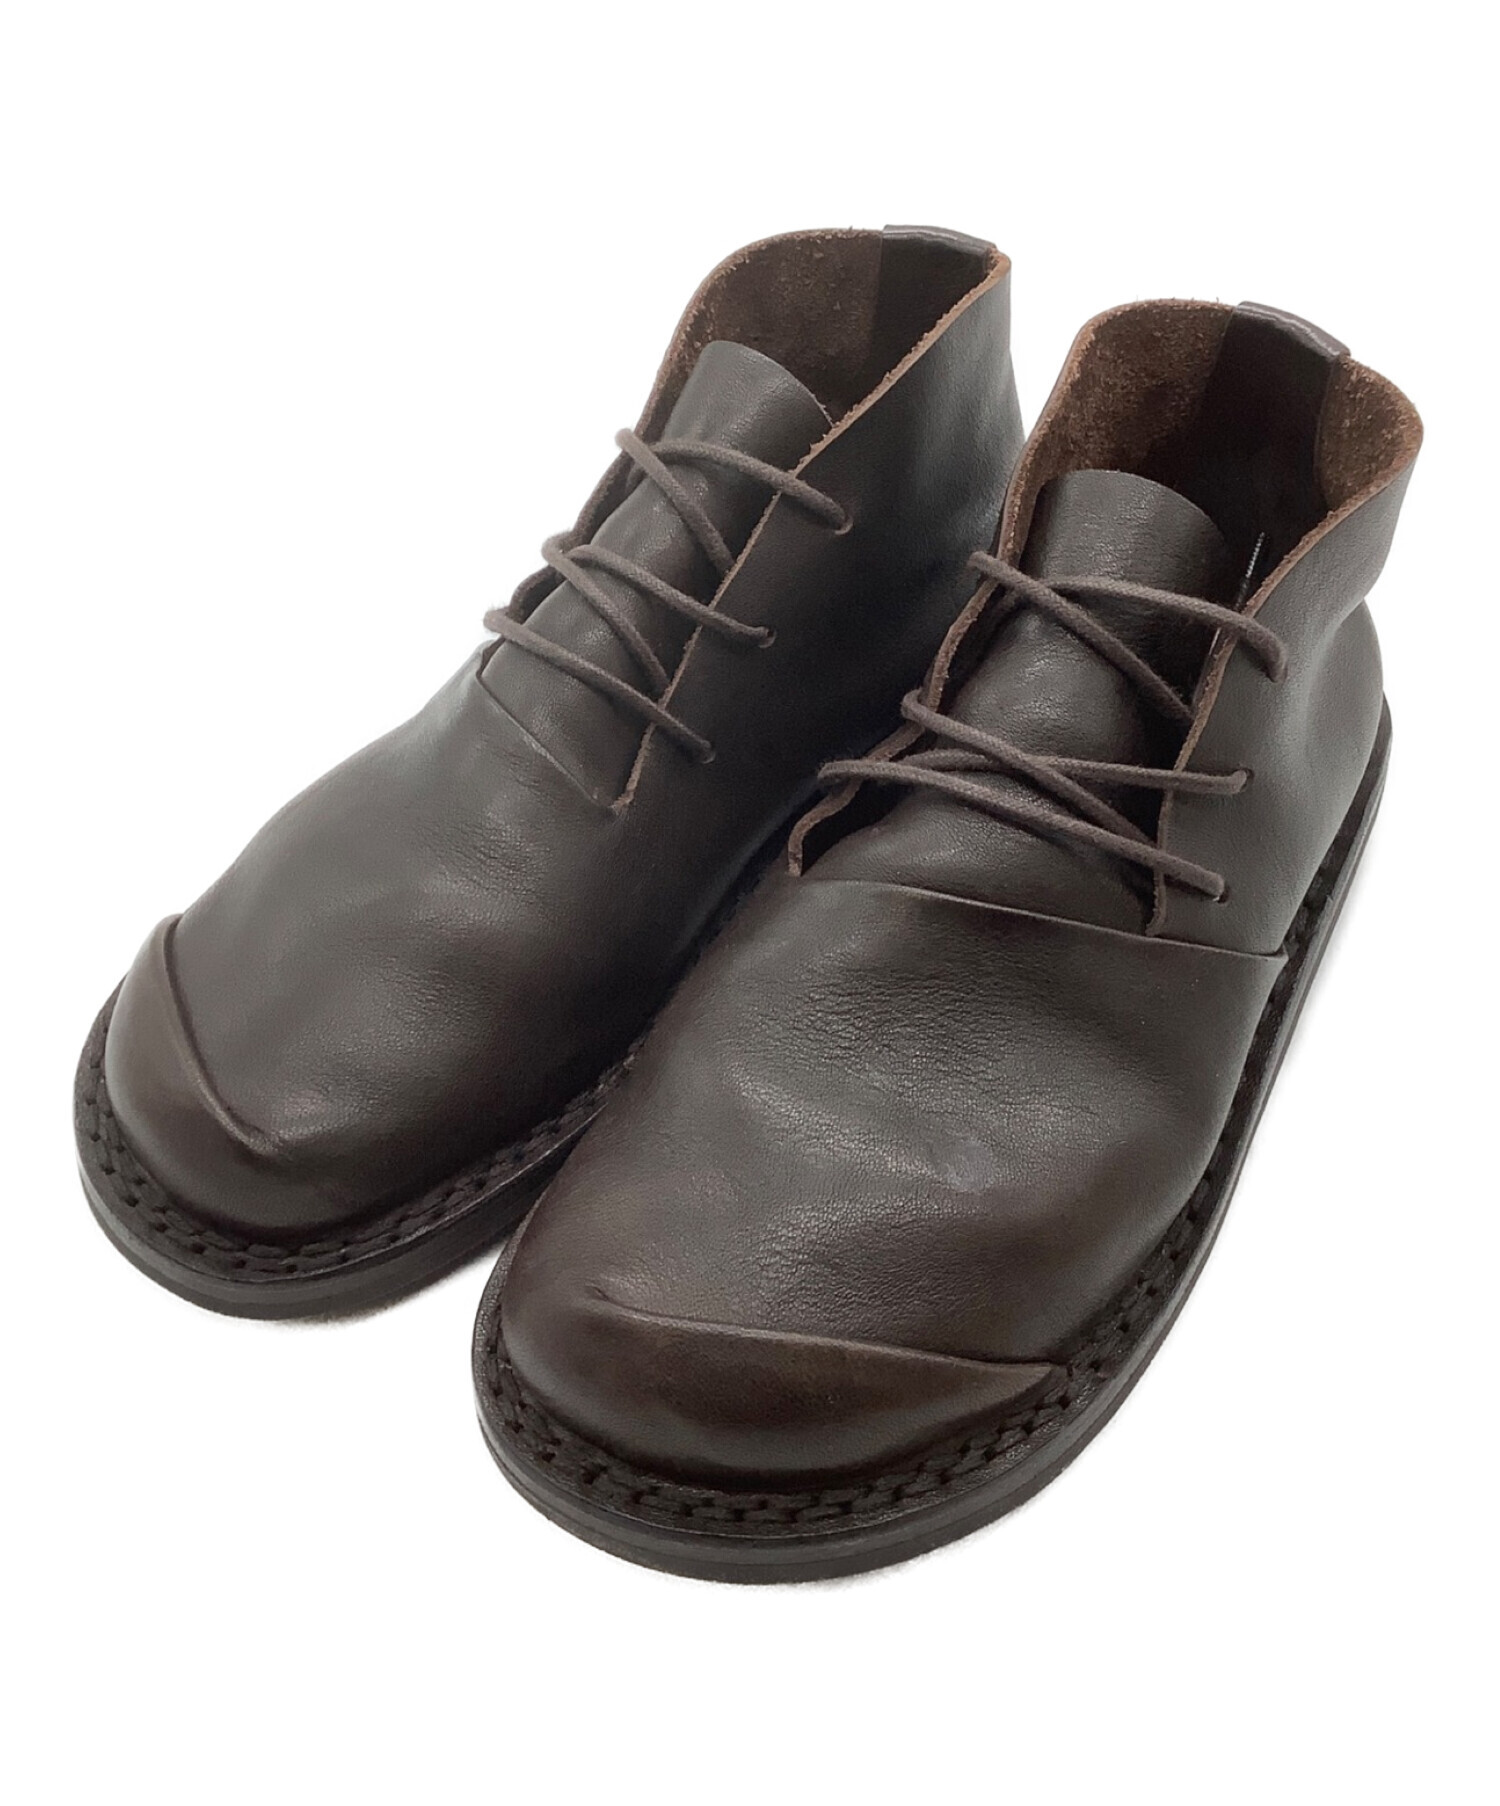 国産低価trippen トリッペン / ブーツ size35 ブラウン 靴